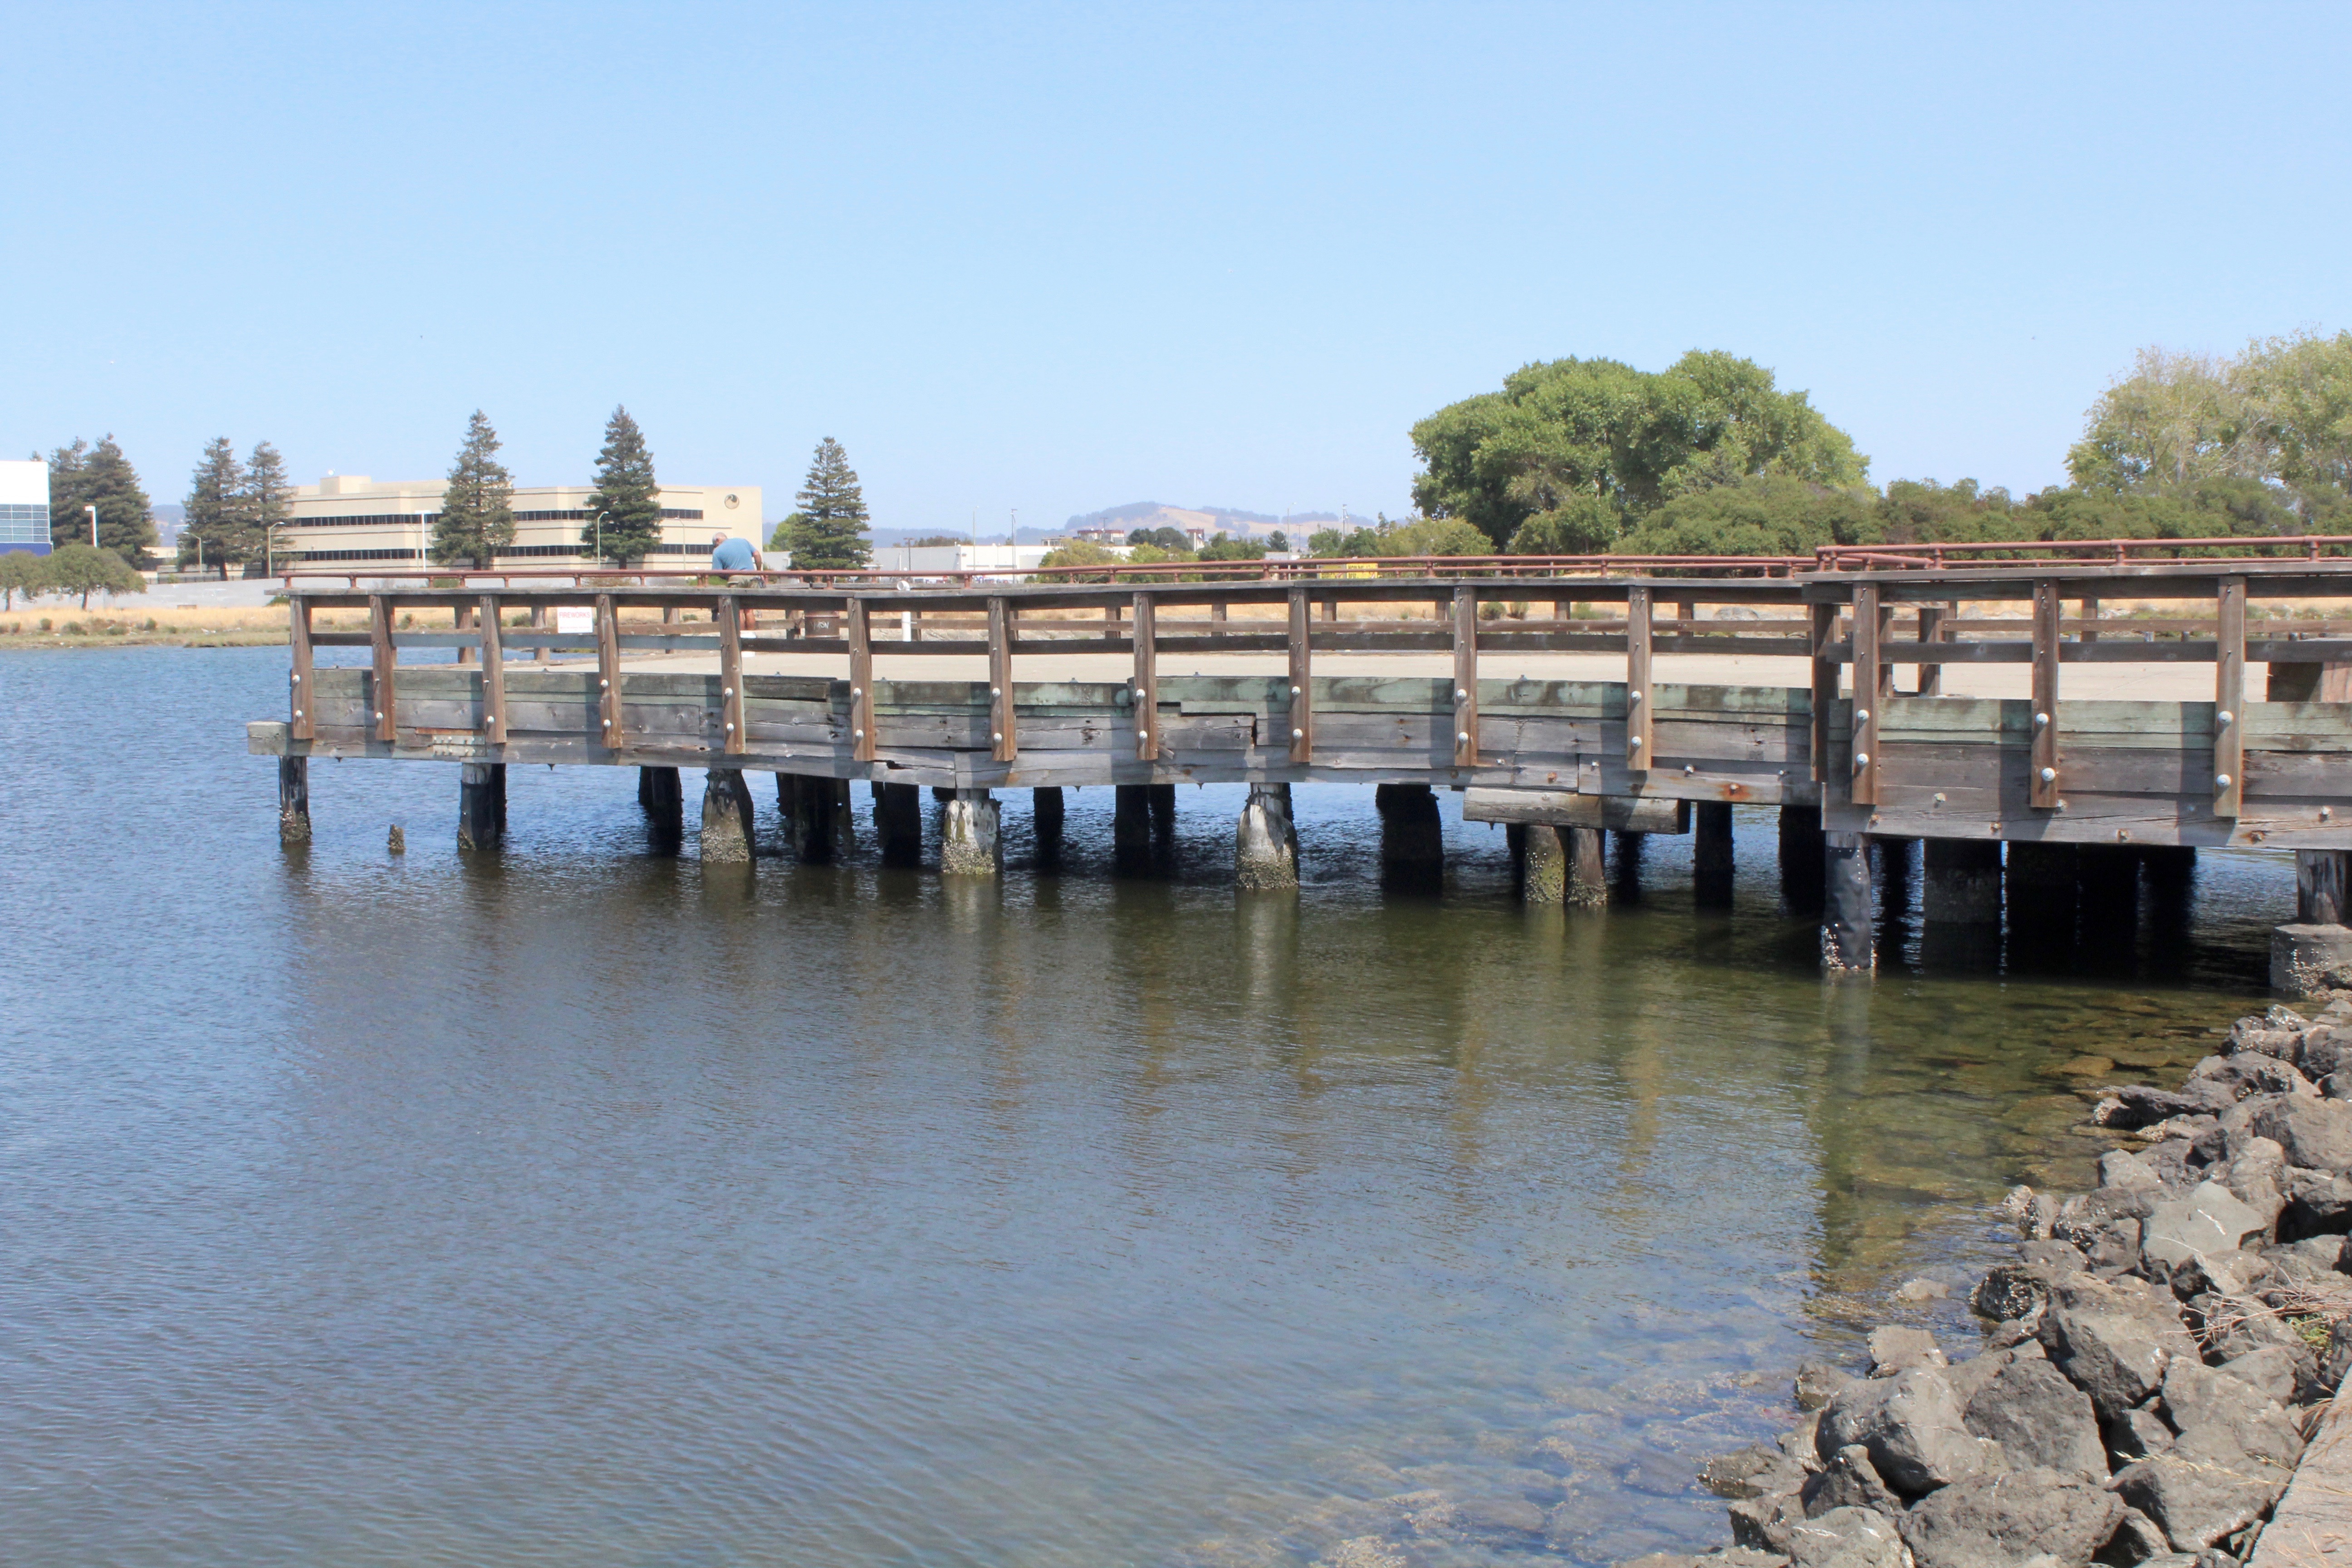 Doolittle Pier — Oakland - Pier Fishing in California